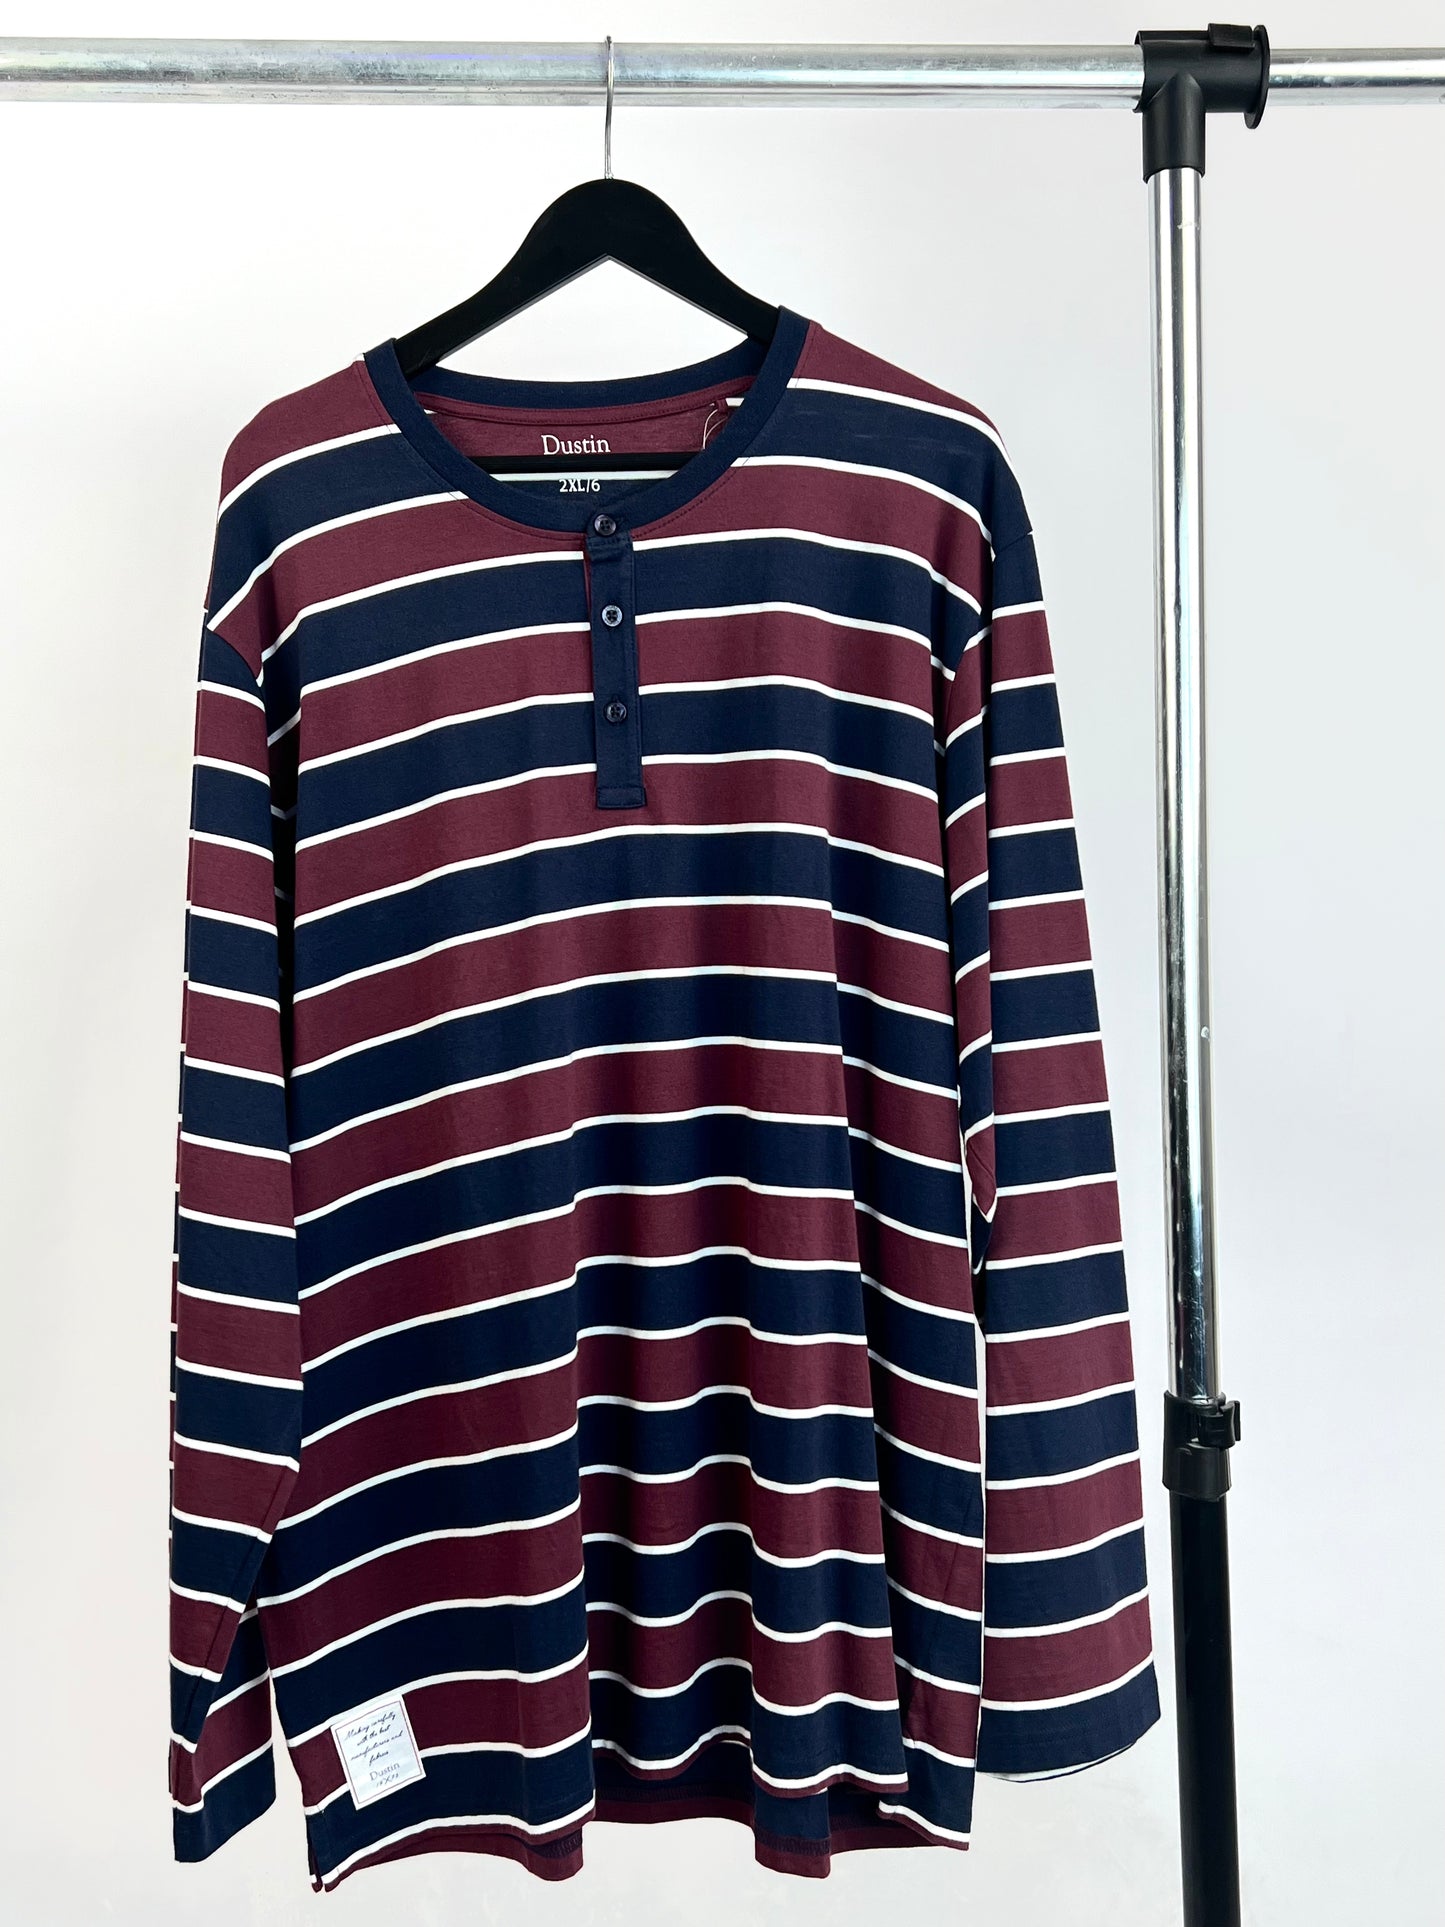 Dustin Striped Henley longsleeve T-shirt